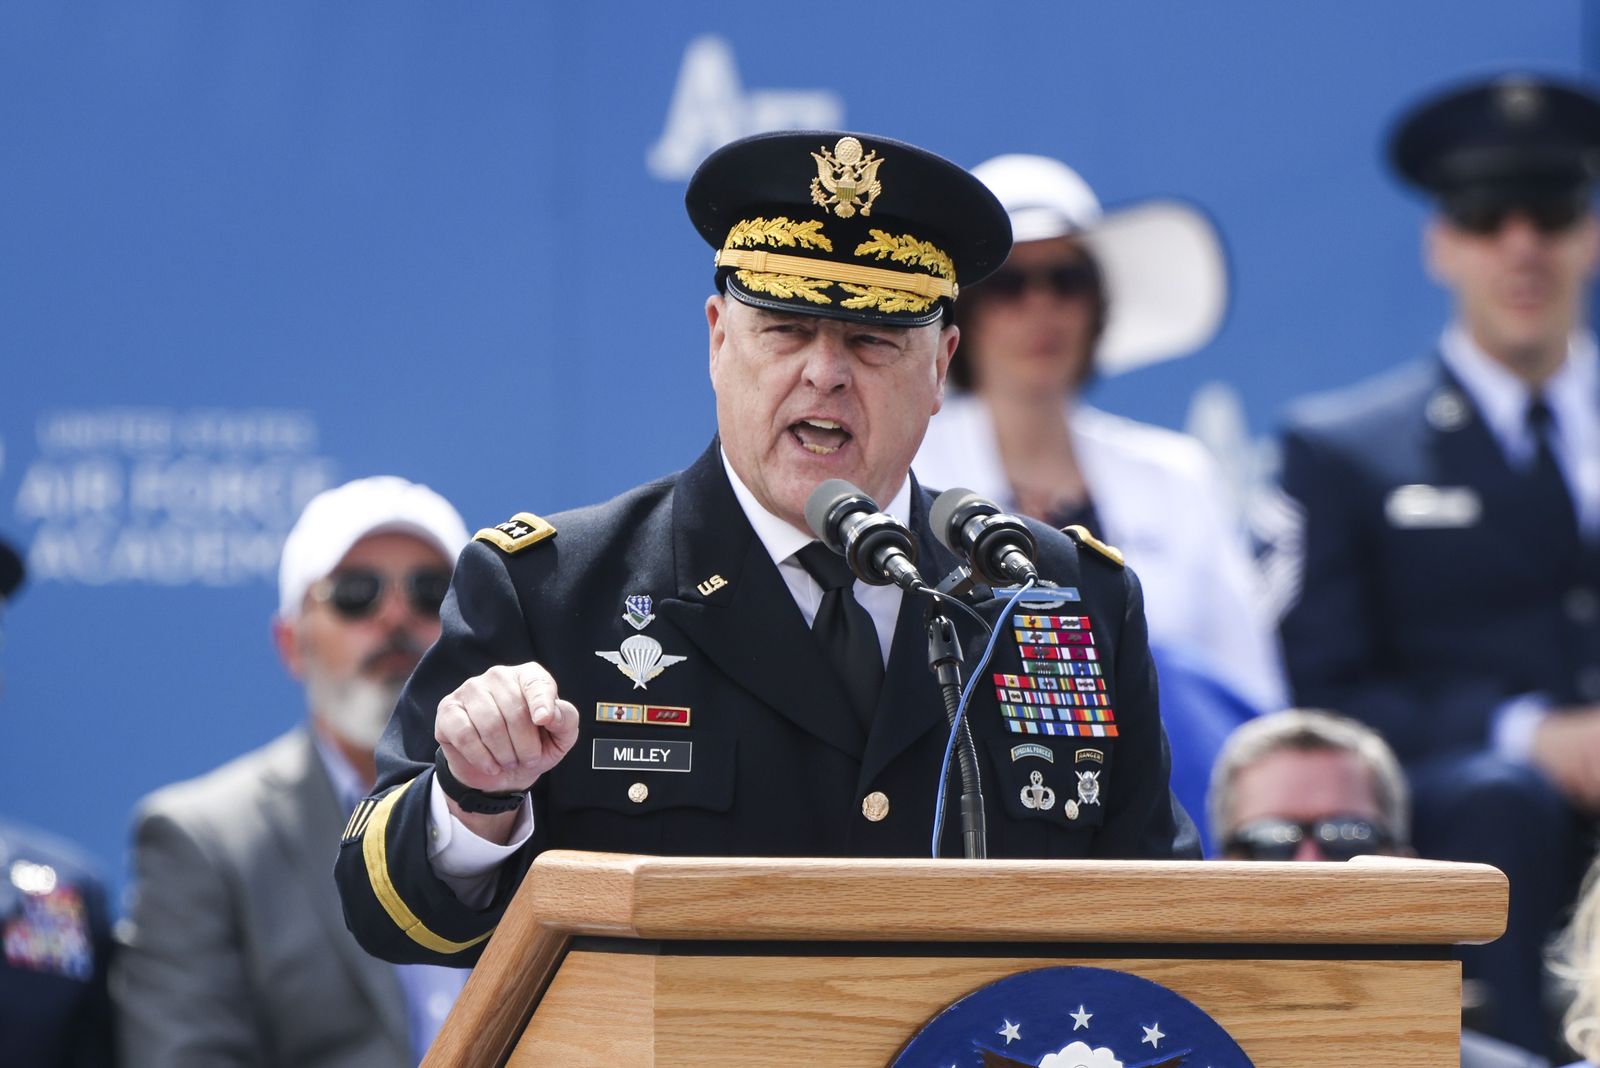 رئيس هيئة الأركان المشتركة الجنرال مارك ميلي يلقي كلمة في حفل تخرج أكاديمية القوات الجوية الأميركية كولورادو. 26 مايو 2021 - AFP